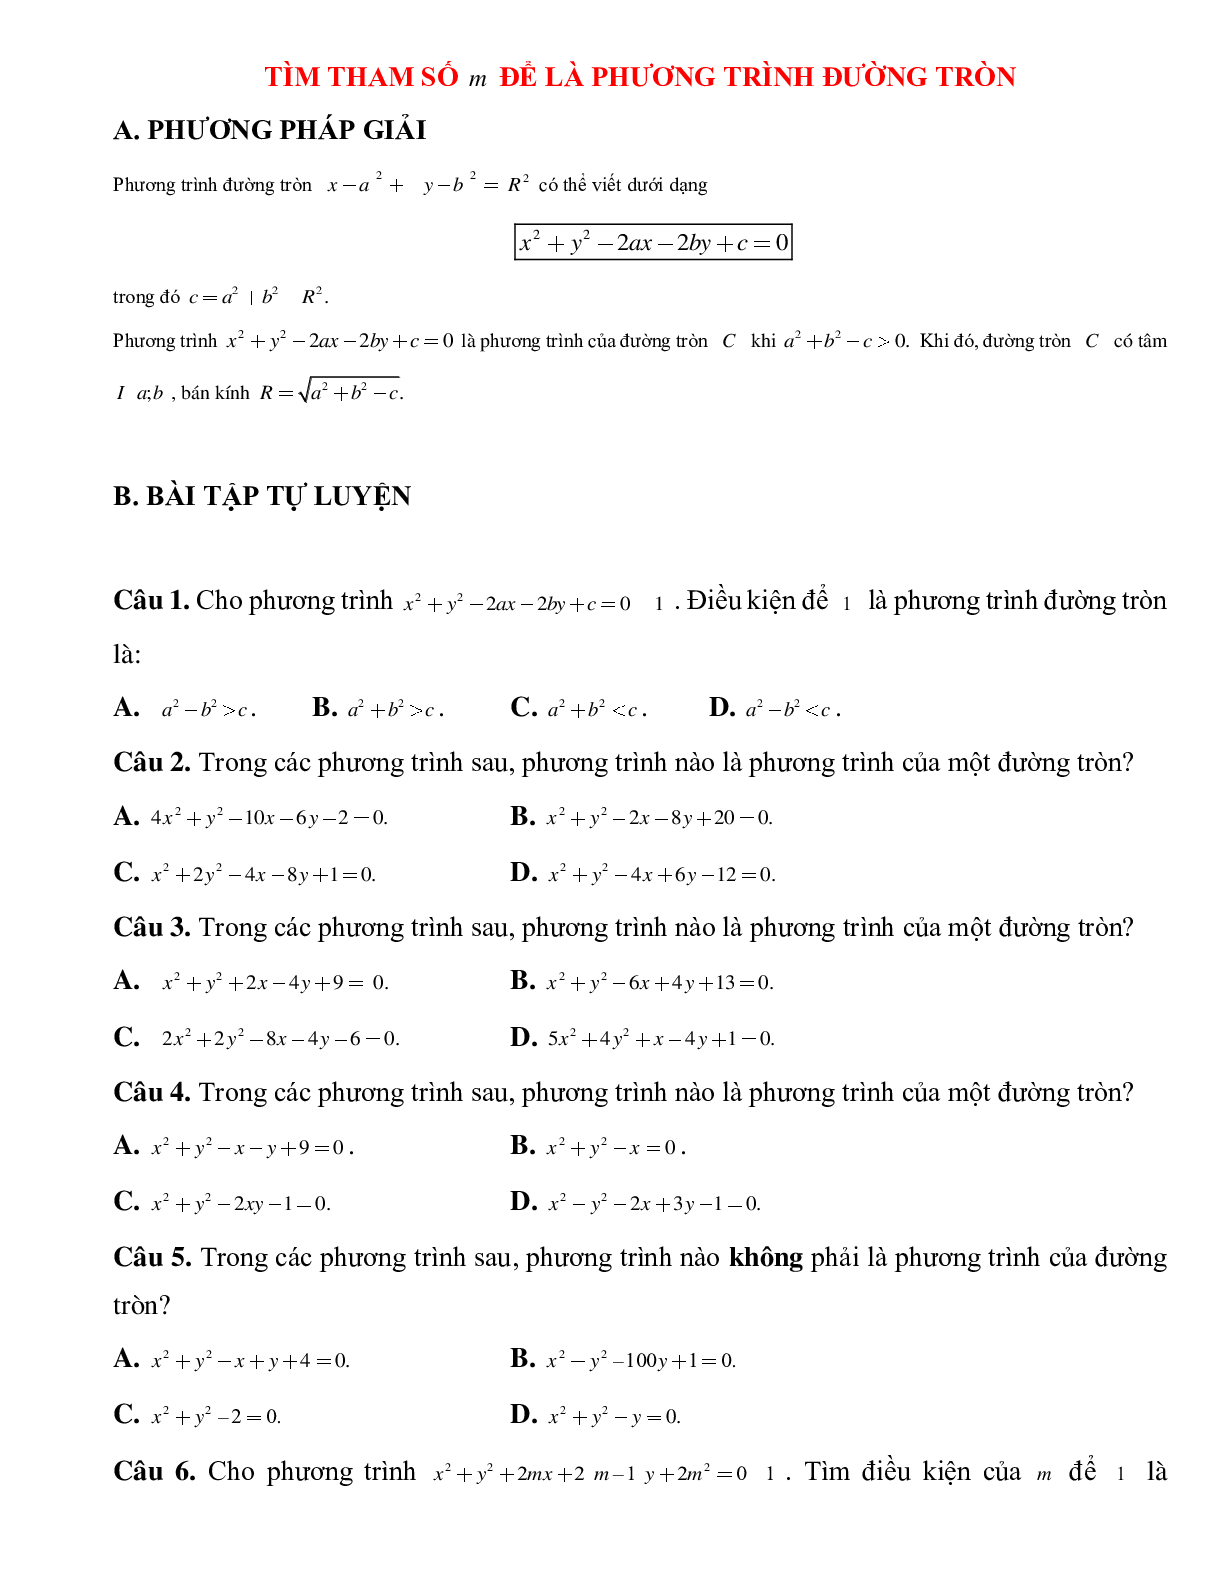 Bài tập về Tìm tham số m để thỏa mãn phương trình đường tròn chọn lọc (trang 1)